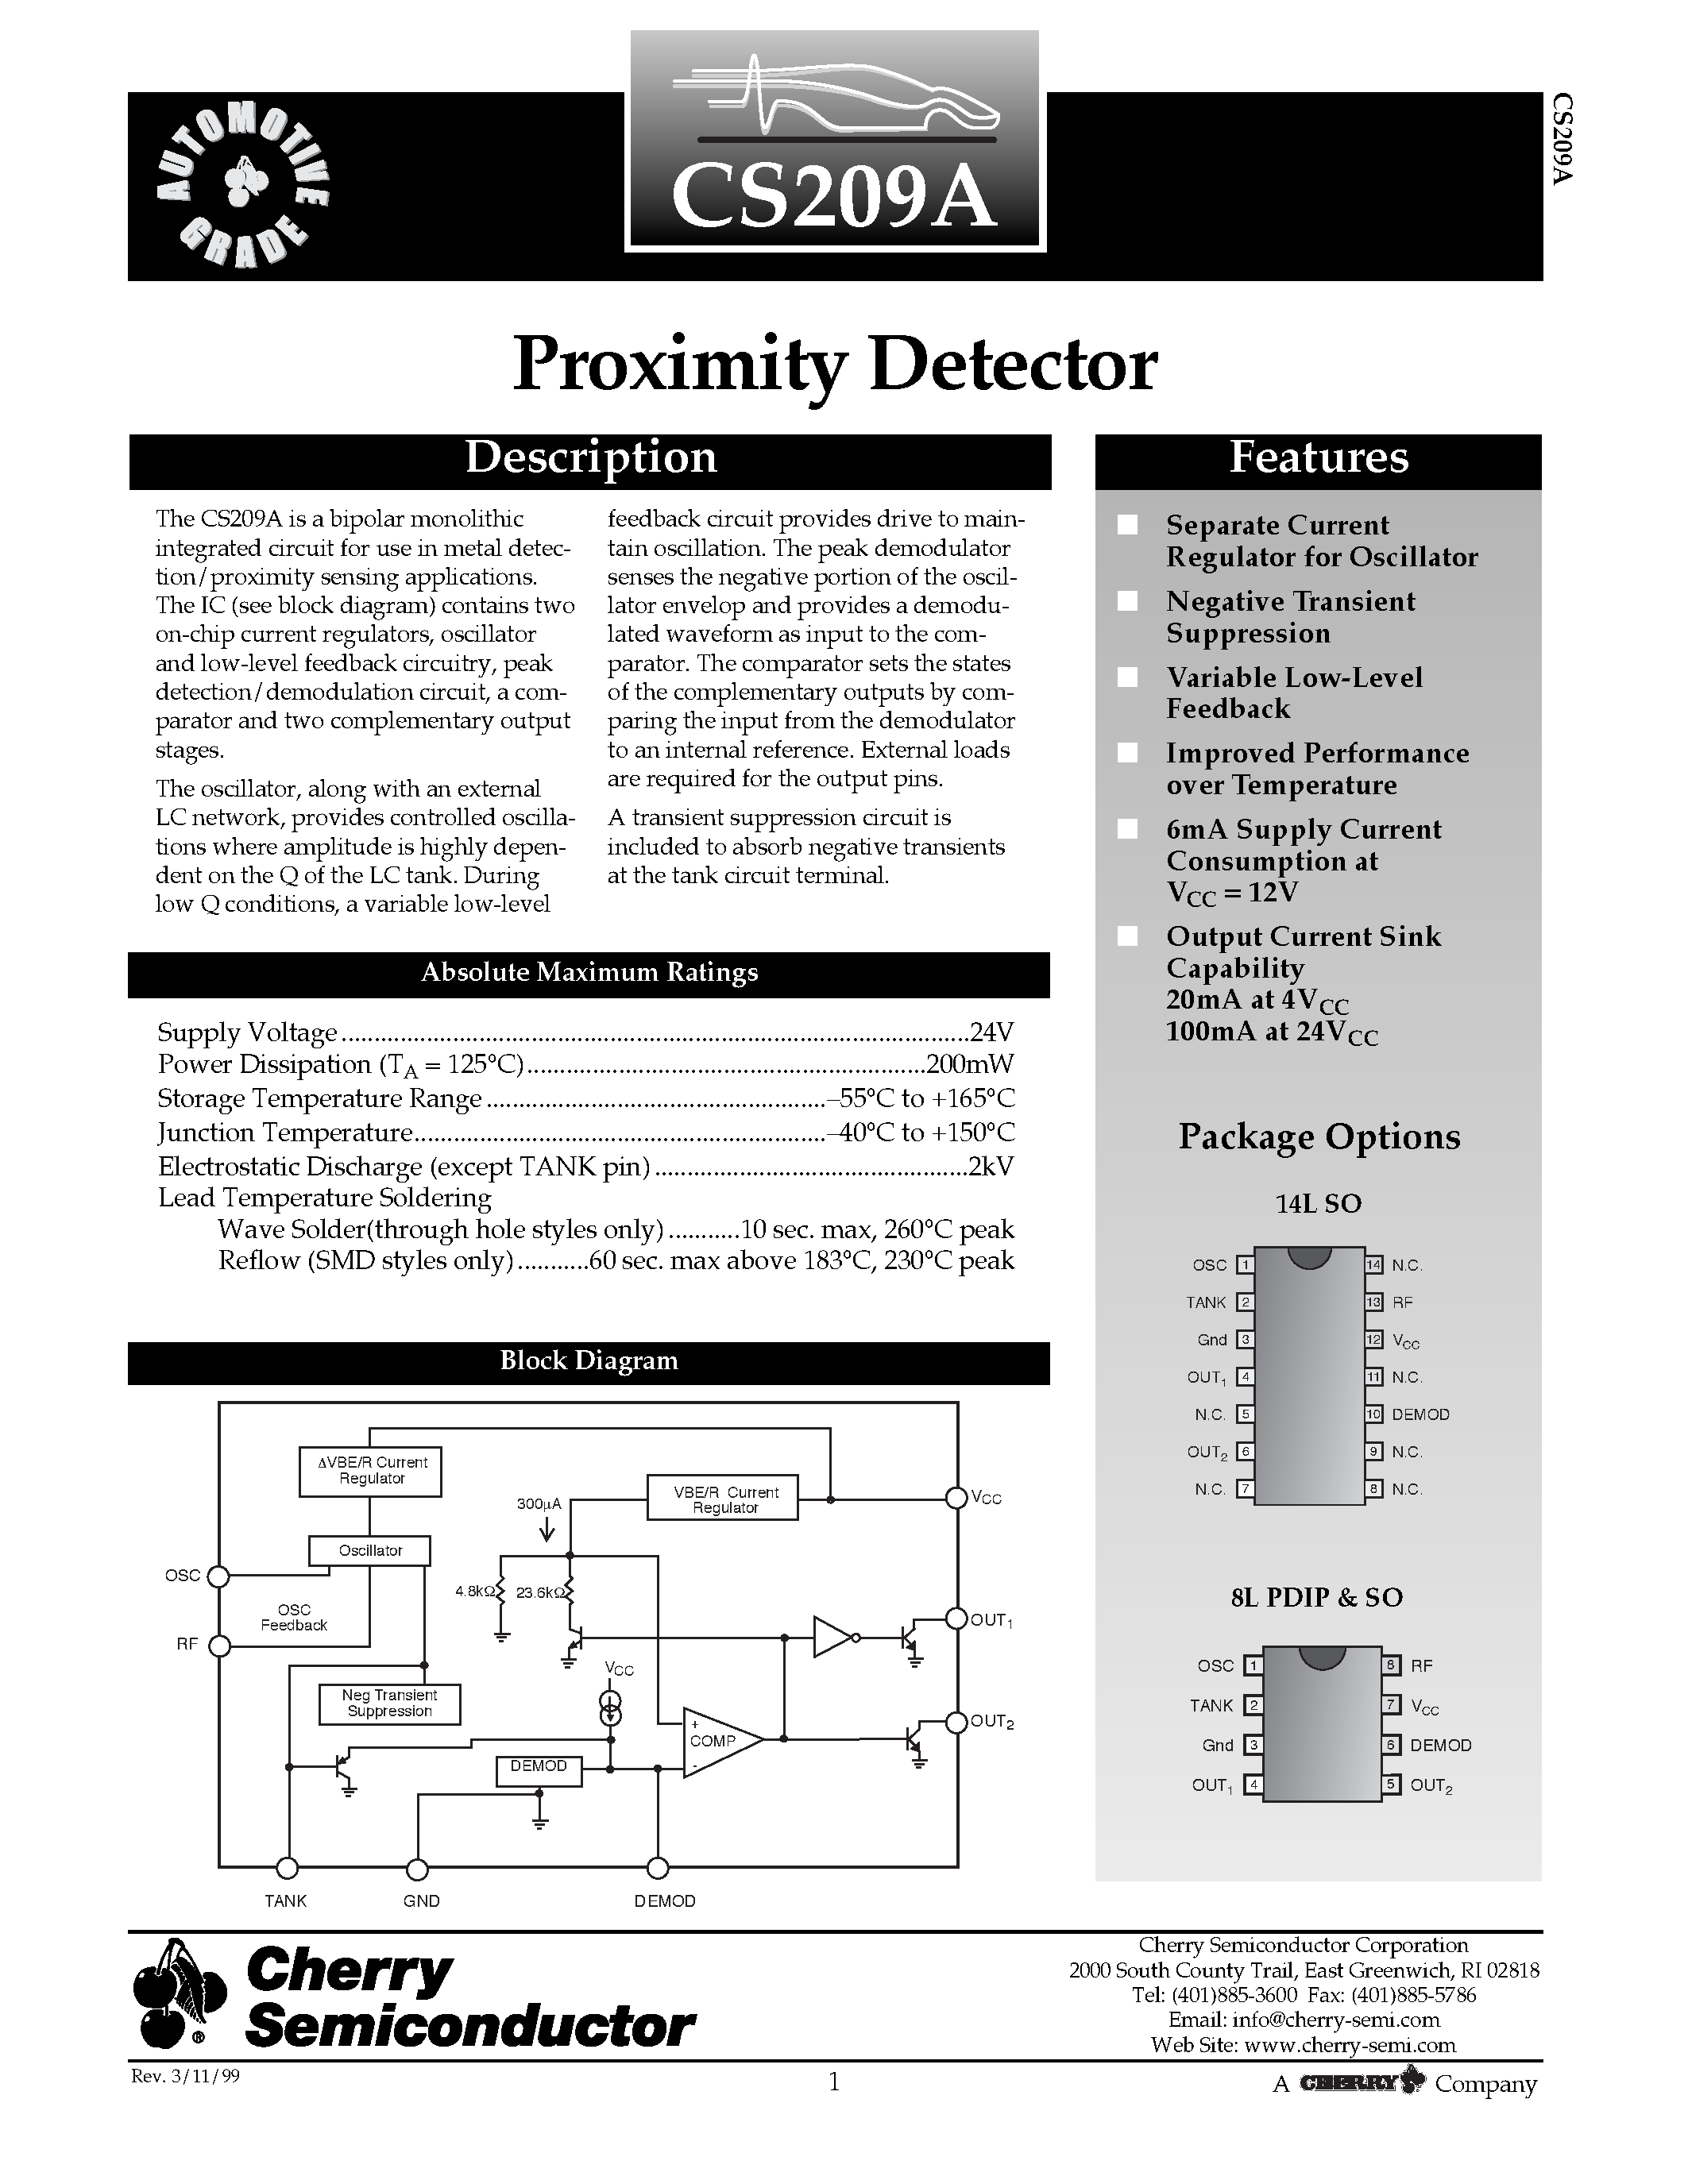 Даташит CS209AYD14 - Proximity Detector страница 1